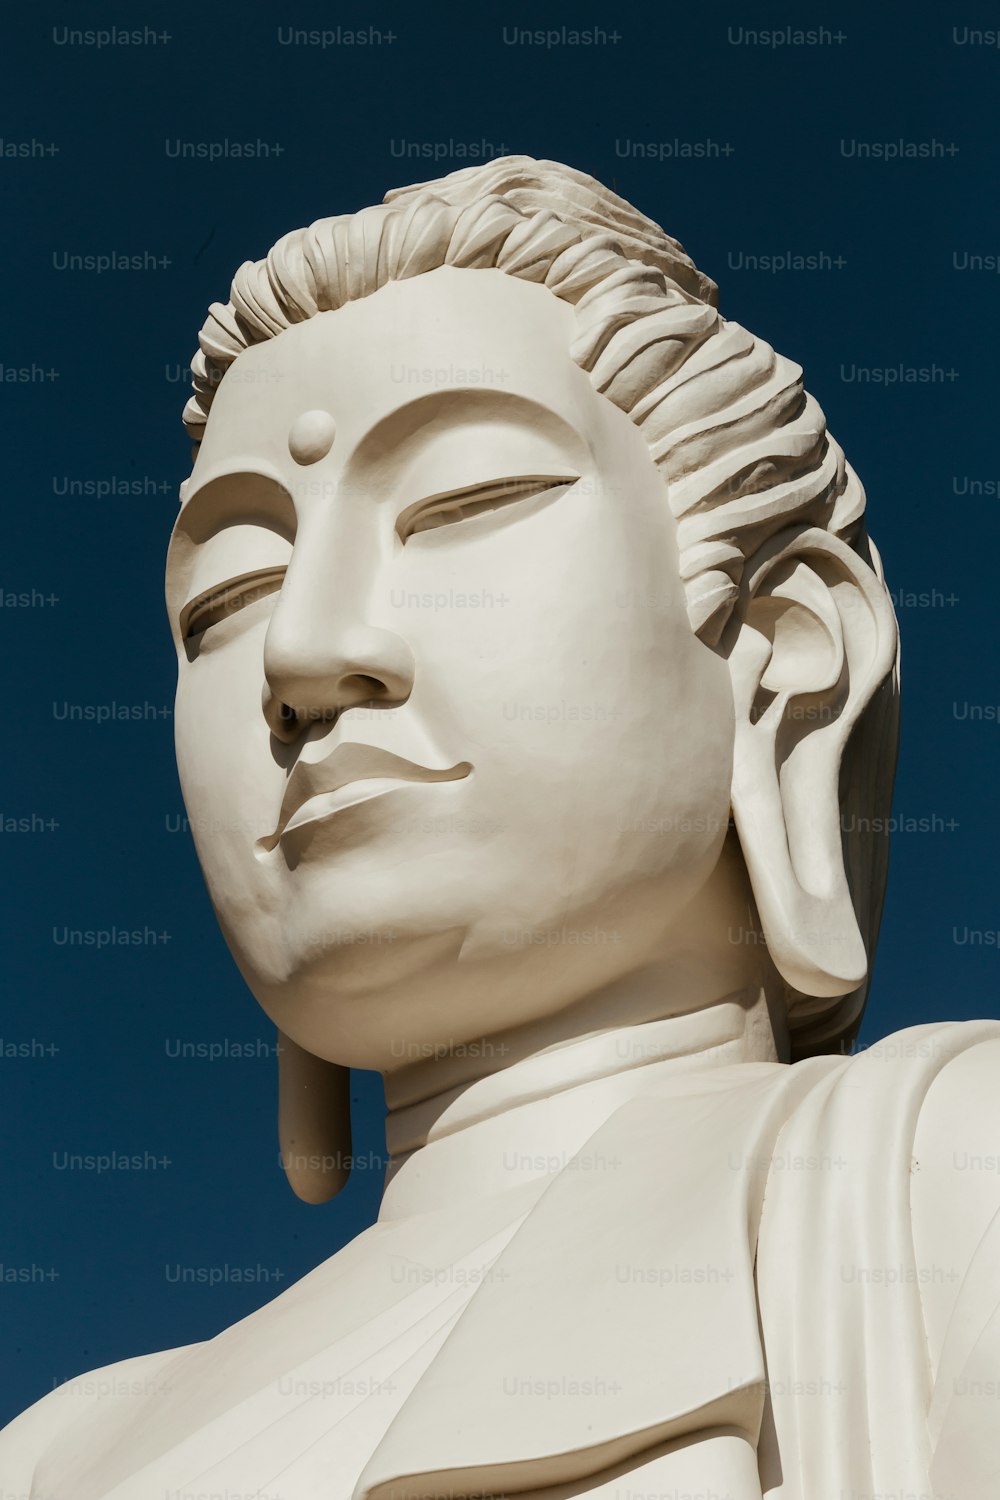 A close up of a white buddha statue photo – Buddha statue Image on Unsplash